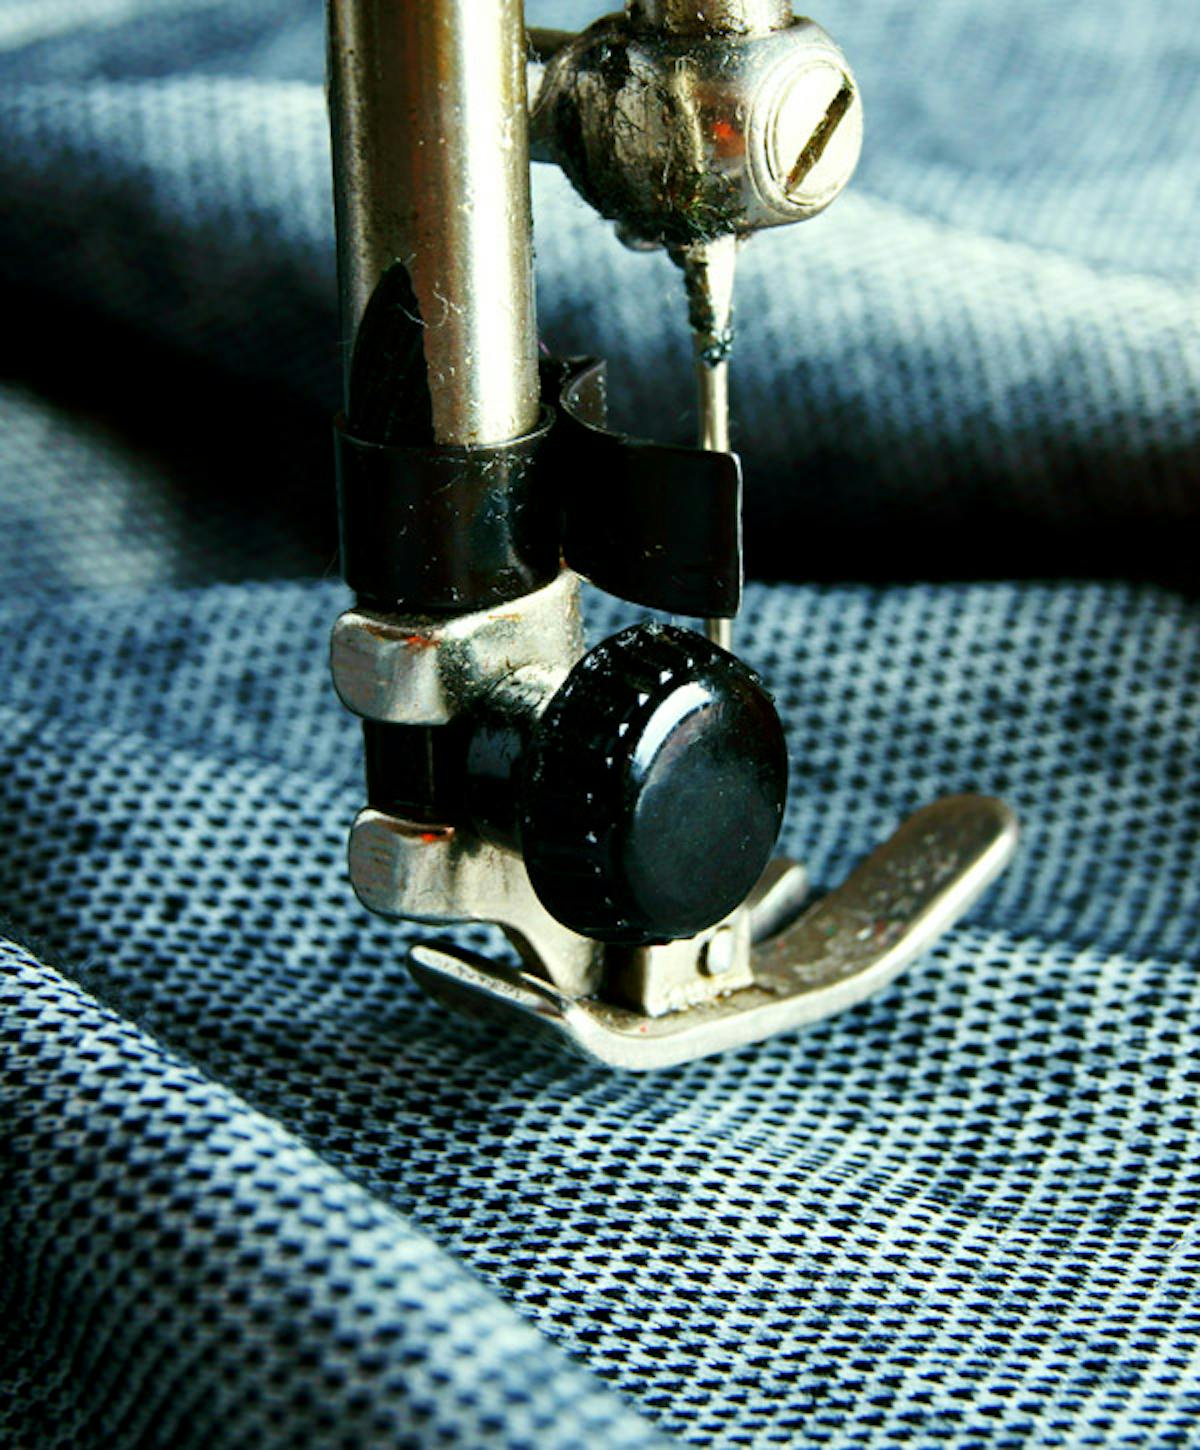  gros plan d'une machine à coudre avec du tissu tricoté bleu